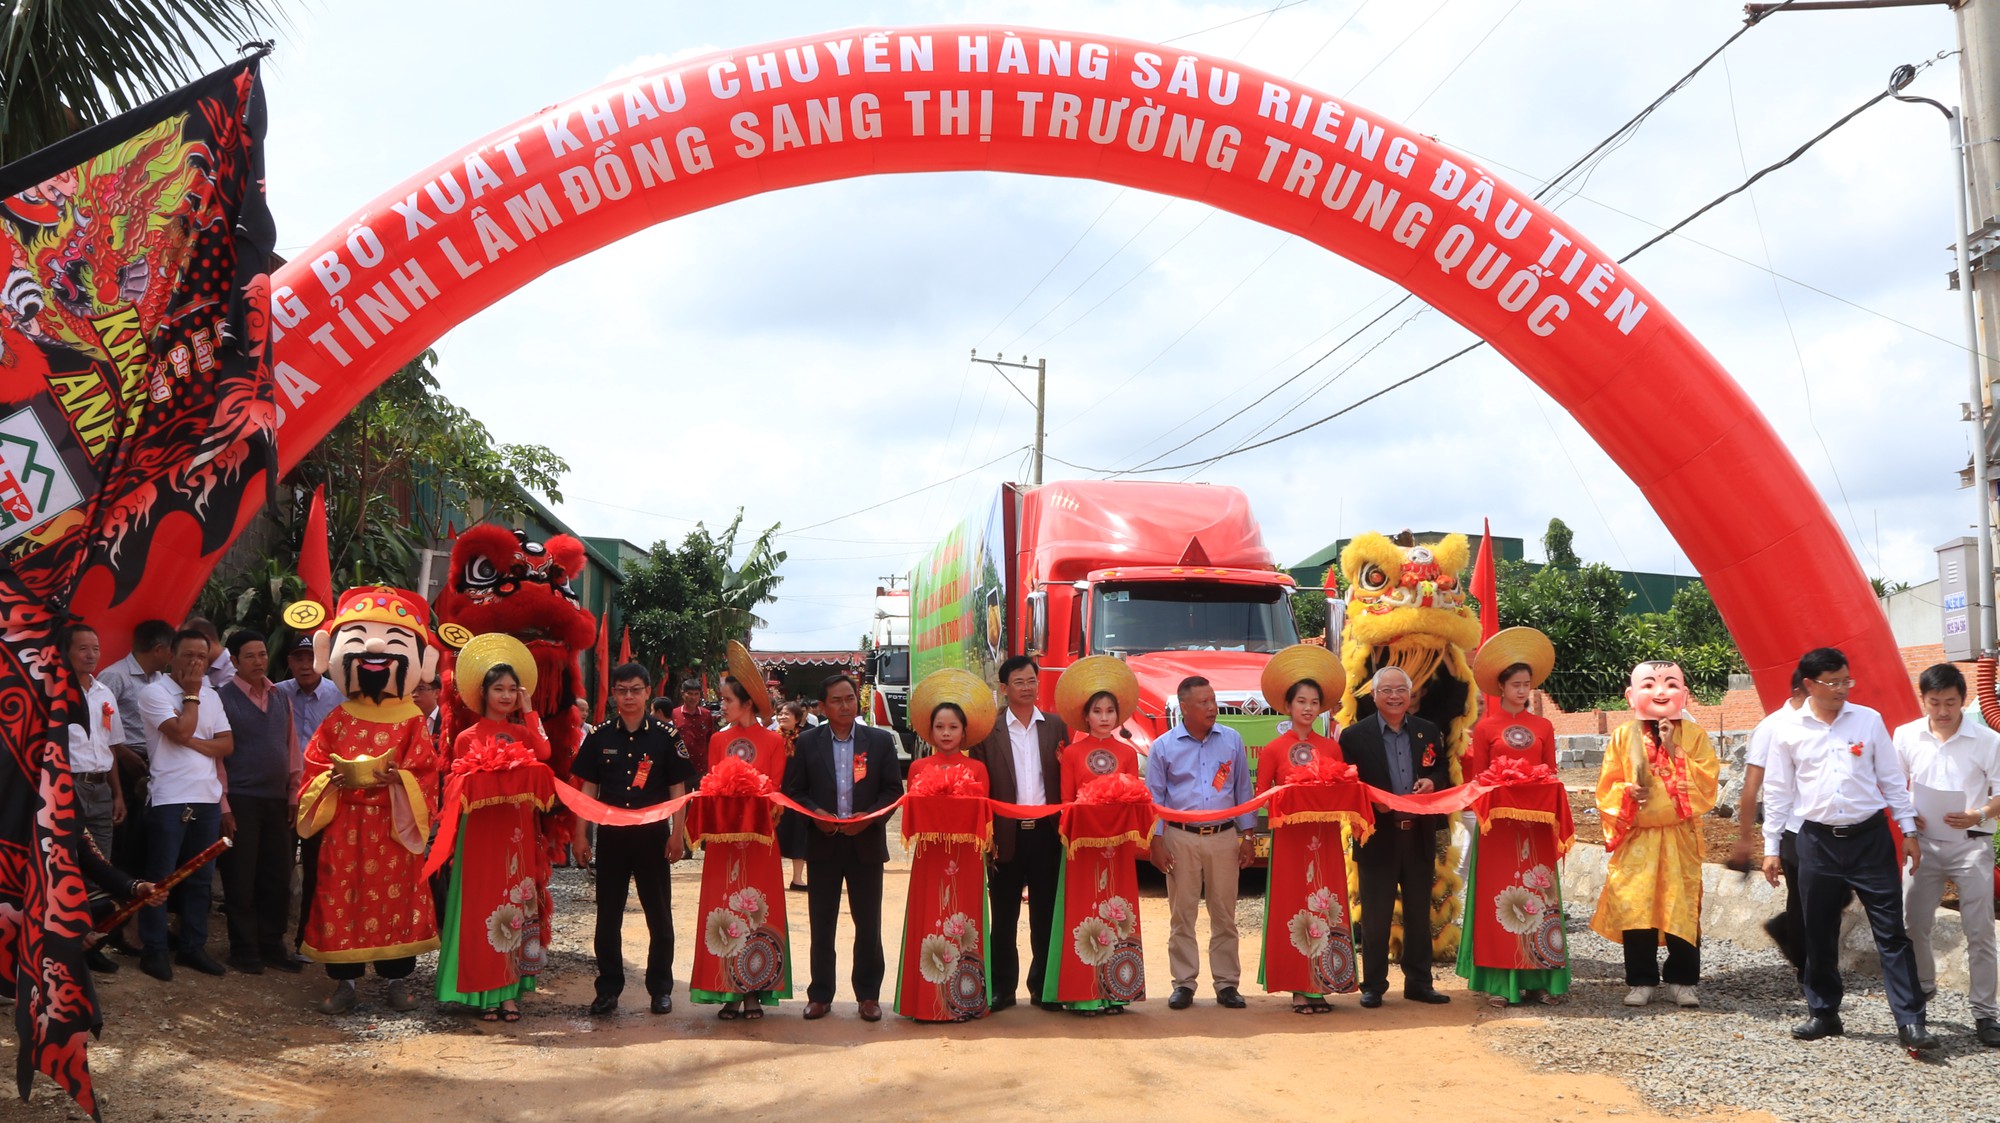 Lâm Đồng xuất khẩu sầu riêng chính ngạch sang Trung Quốc lần đầu tiên trên 70 tấn - Ảnh 1.